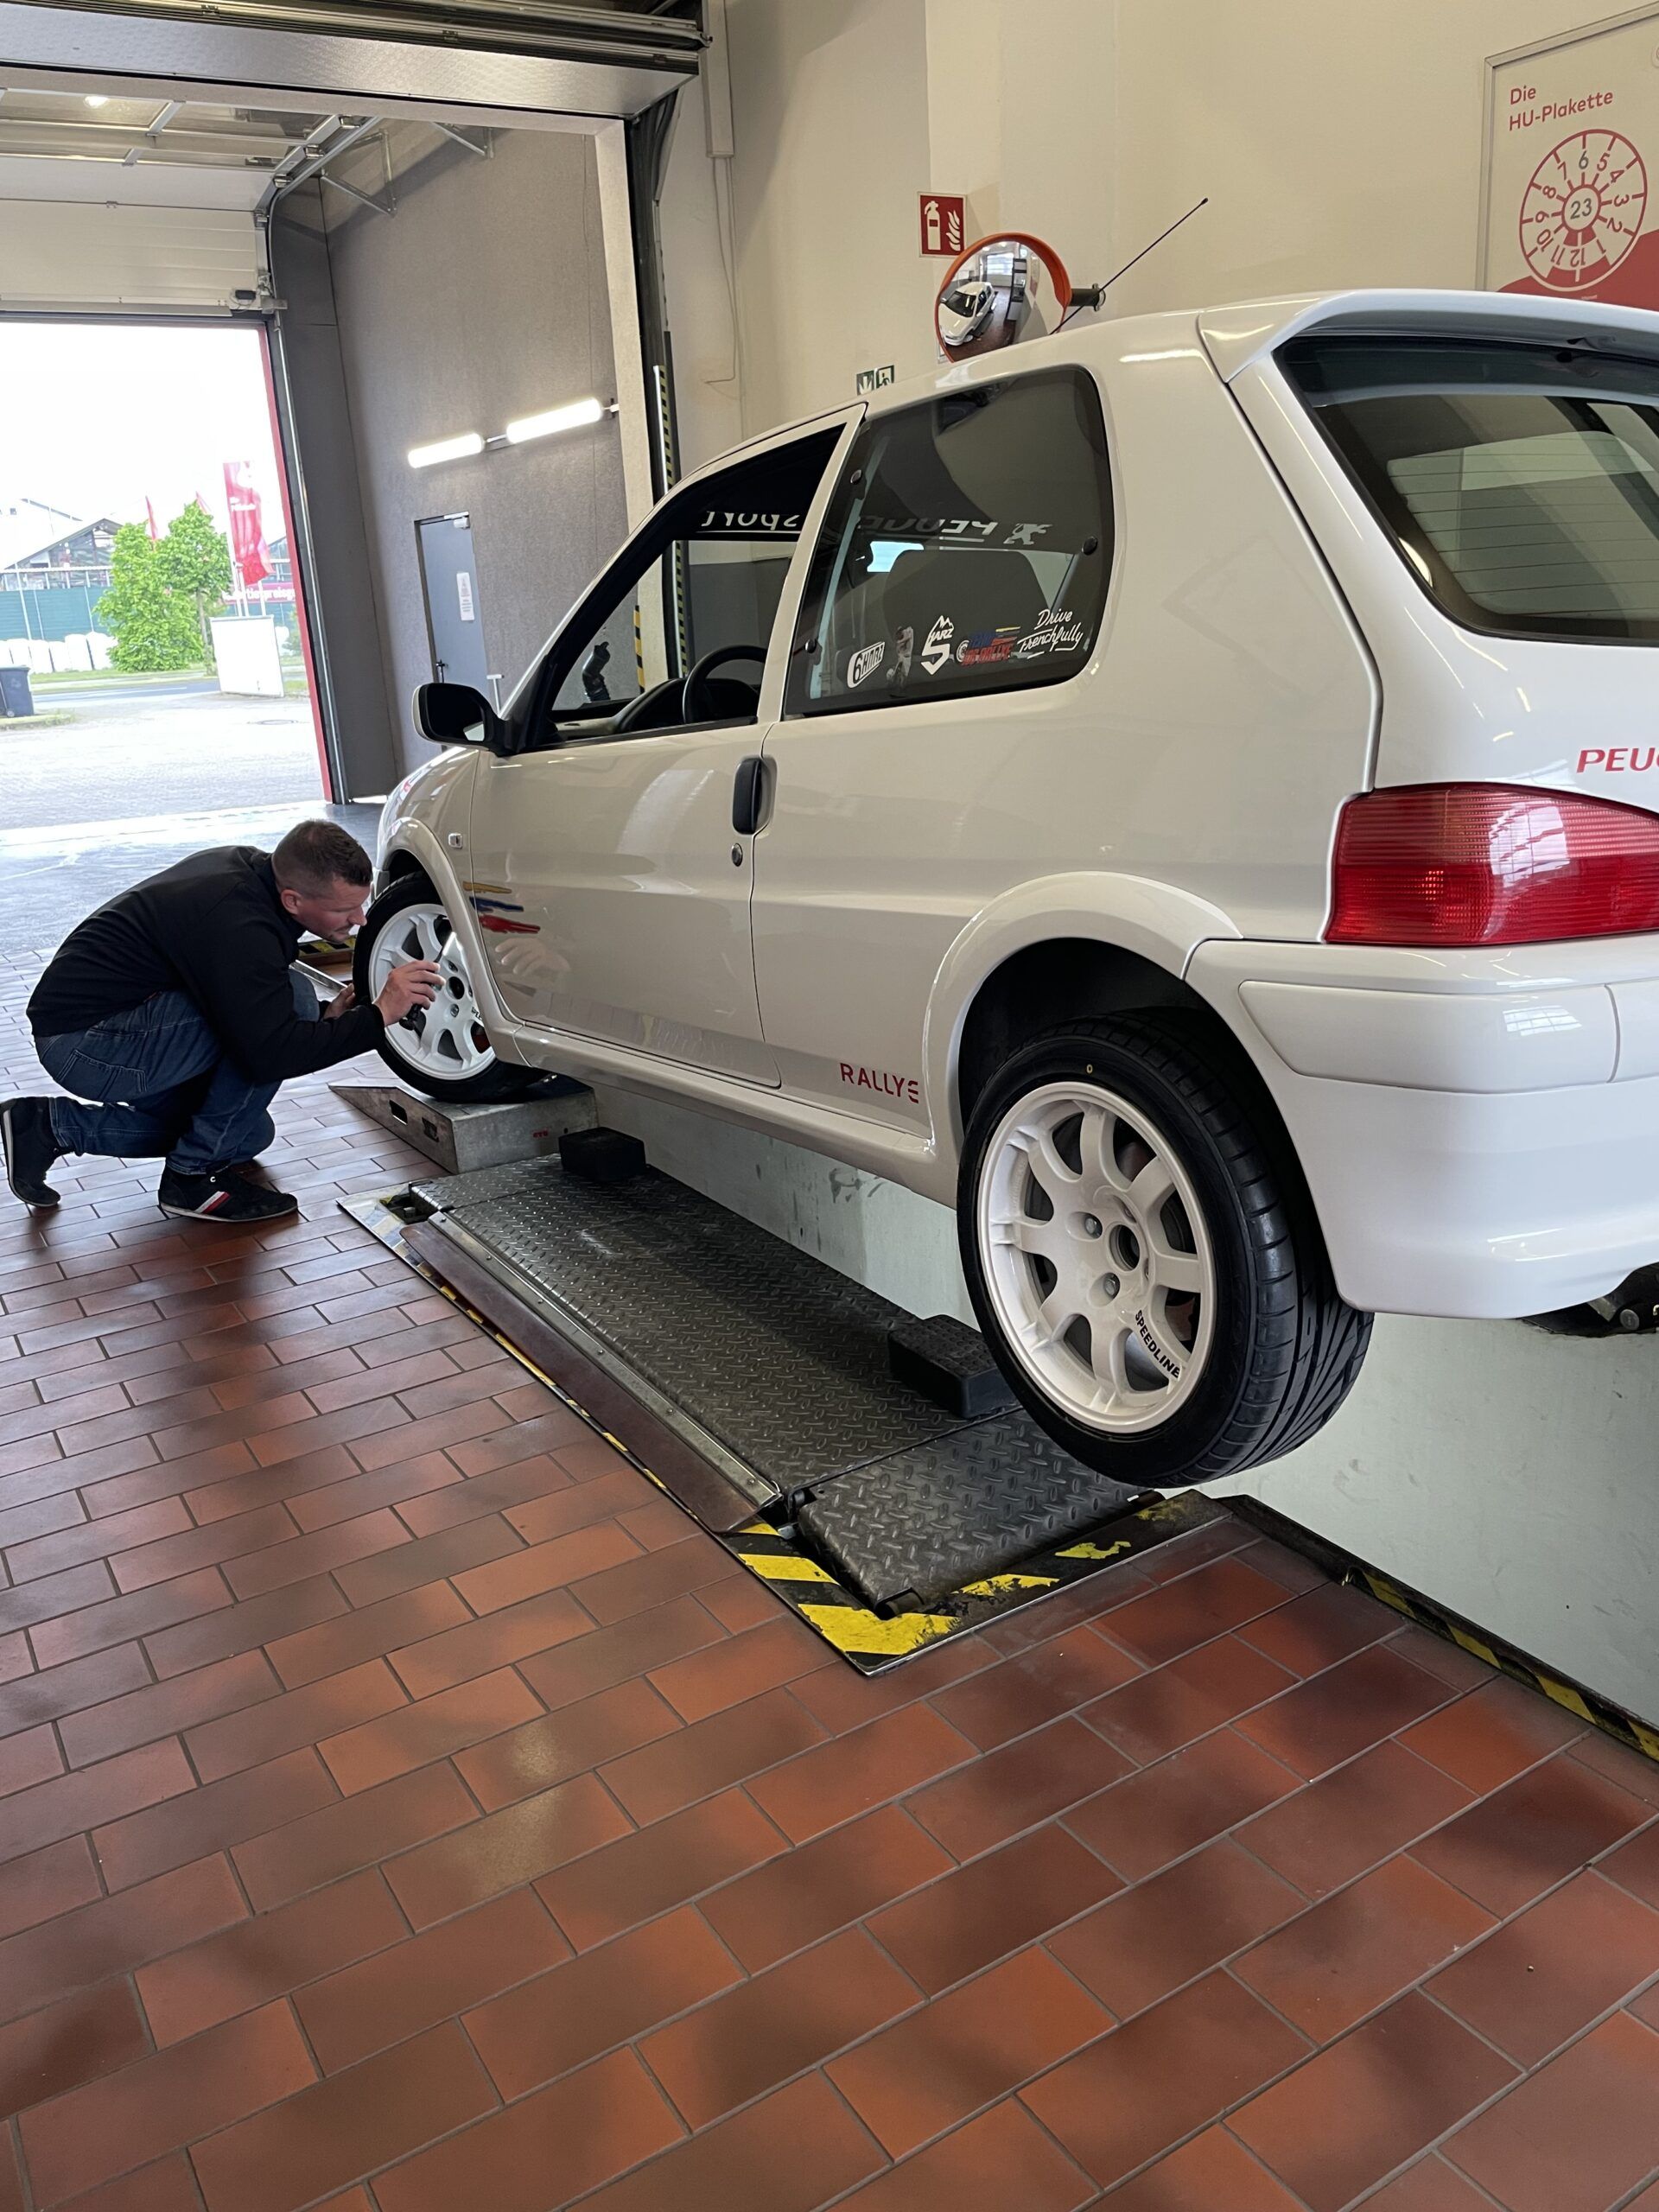 Einzelabnahme in Prüfhalle: Kfz-Prüfingenieur untersucht den vorderen linken Reifen eines weißen Autos.